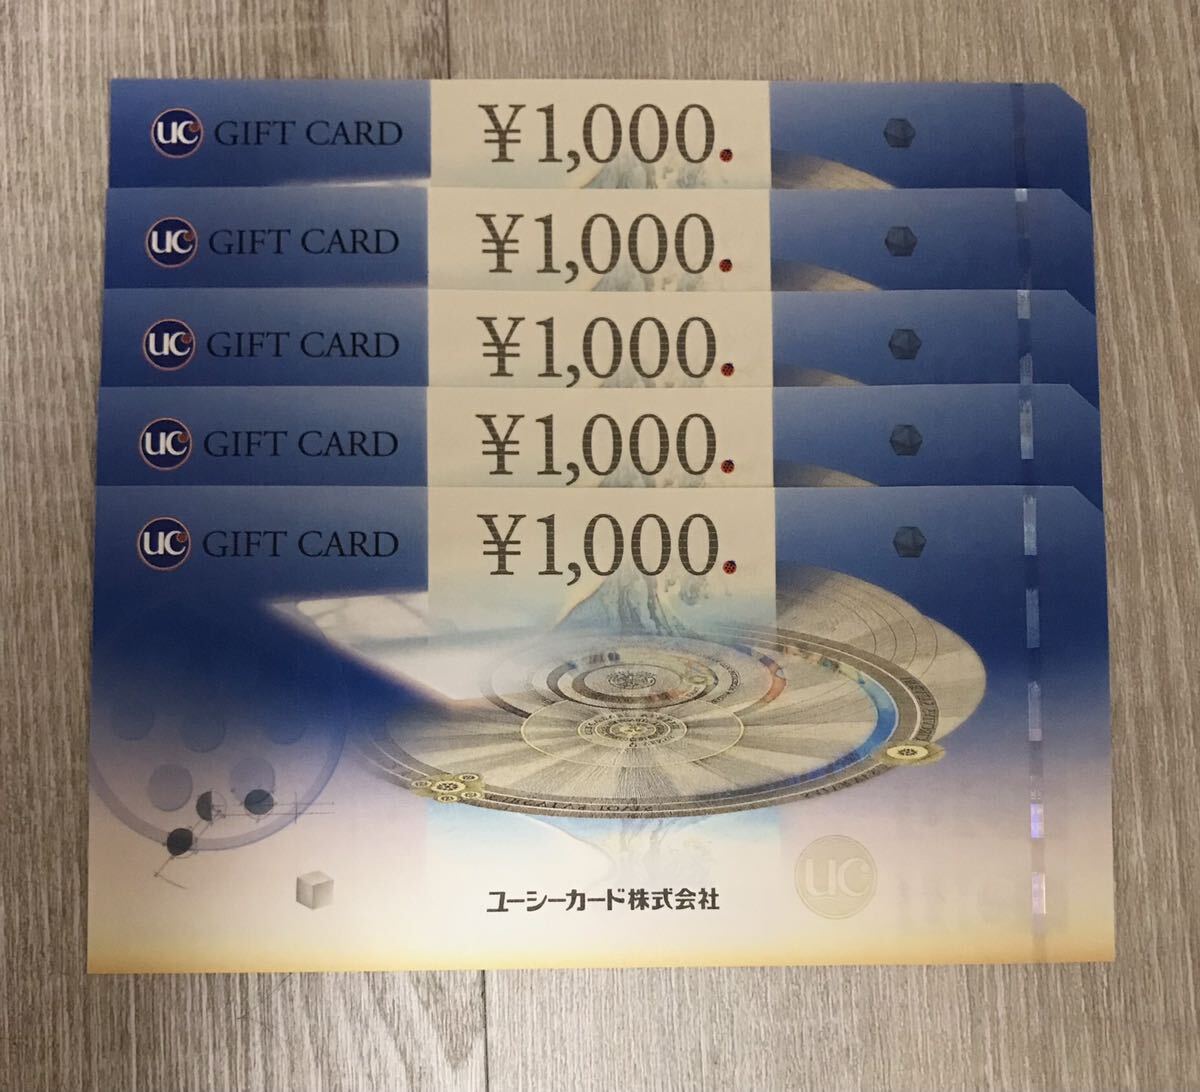 ☆送料無料 UCギフトカード 1,000円×5枚 即決 ギフト券 商品券の画像1